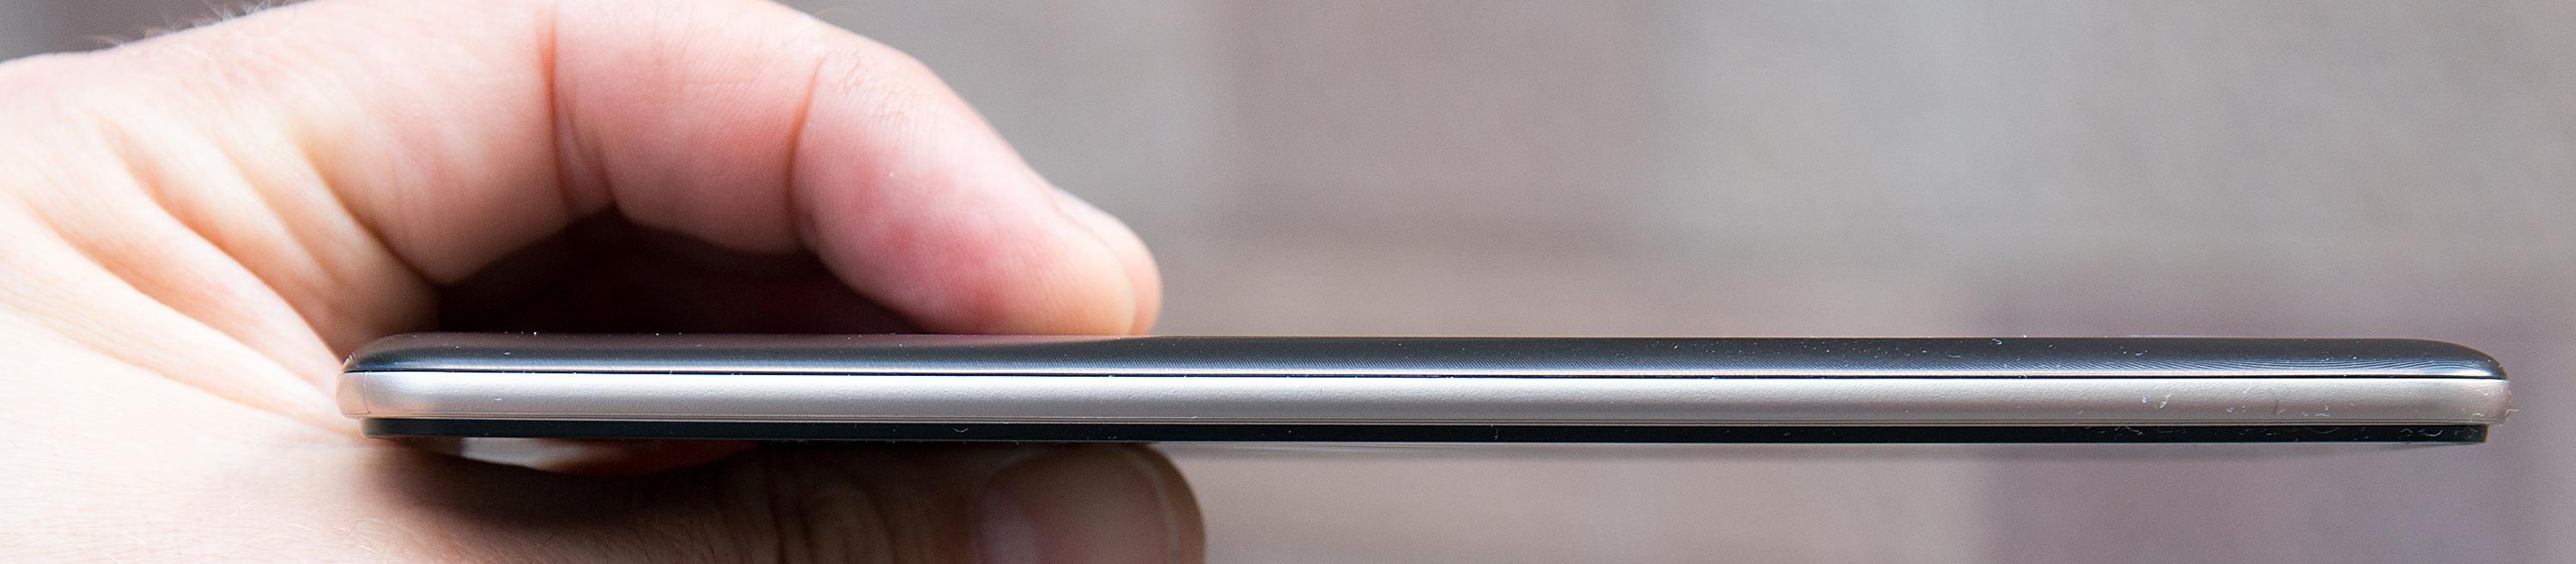 LG Stylus 2 er en forholdsvis slank og pen mobil.